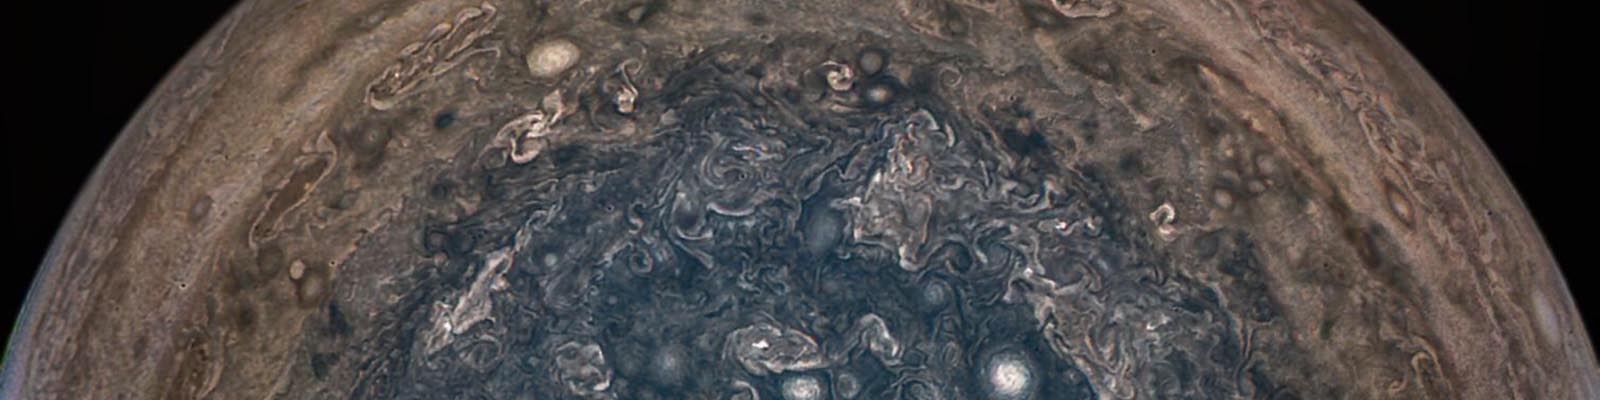 Détails en couleurs de la planète Jupiter